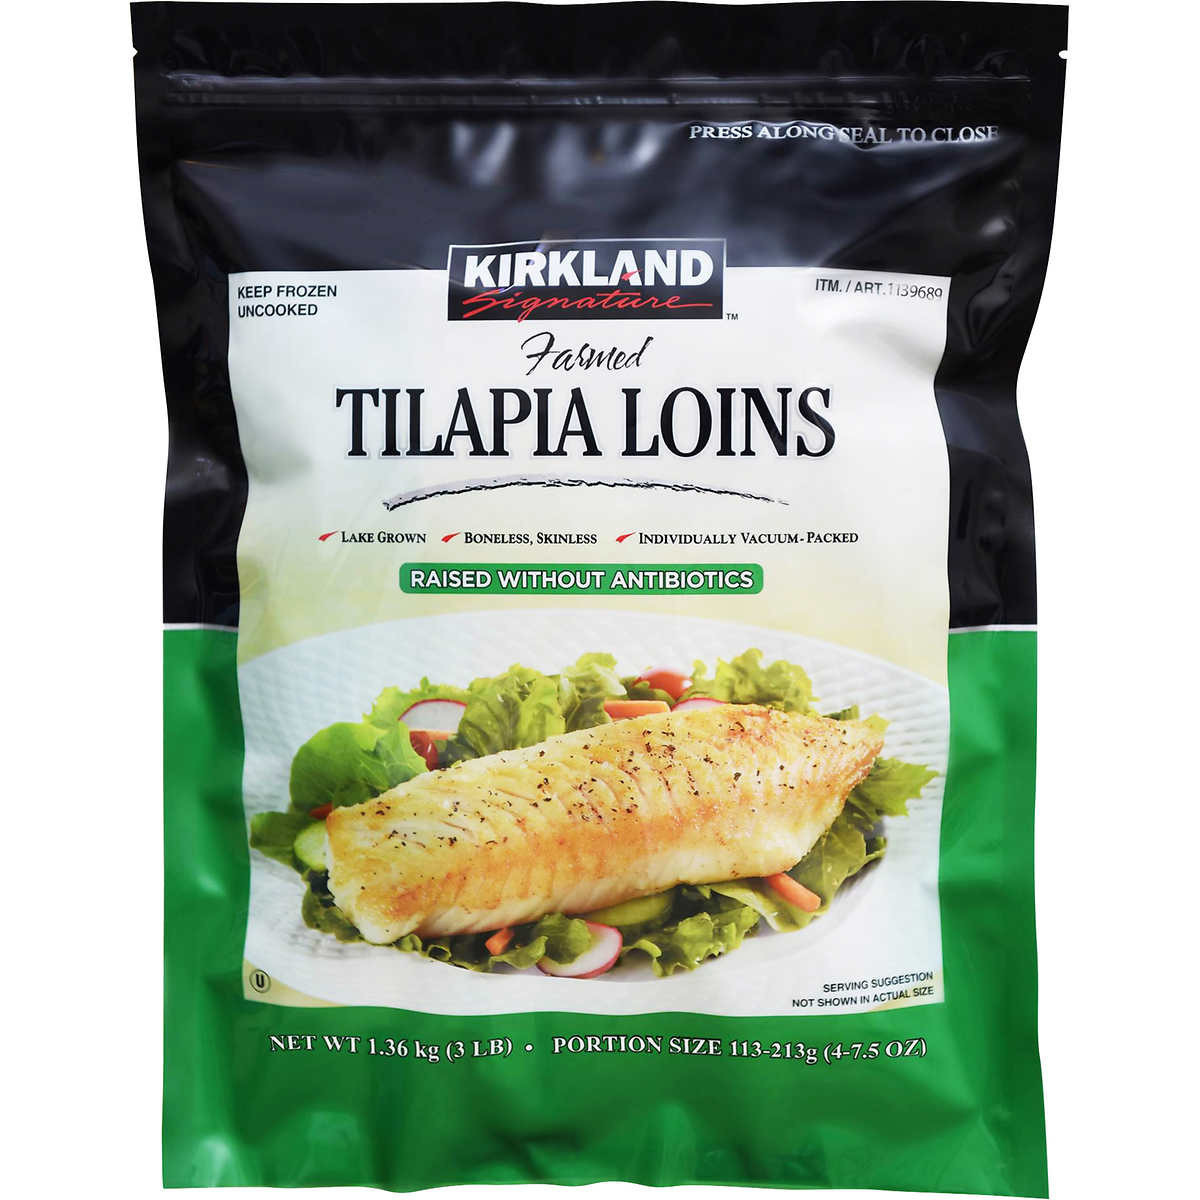 Kirkland signature frozen tilapia loins 1.36 kg